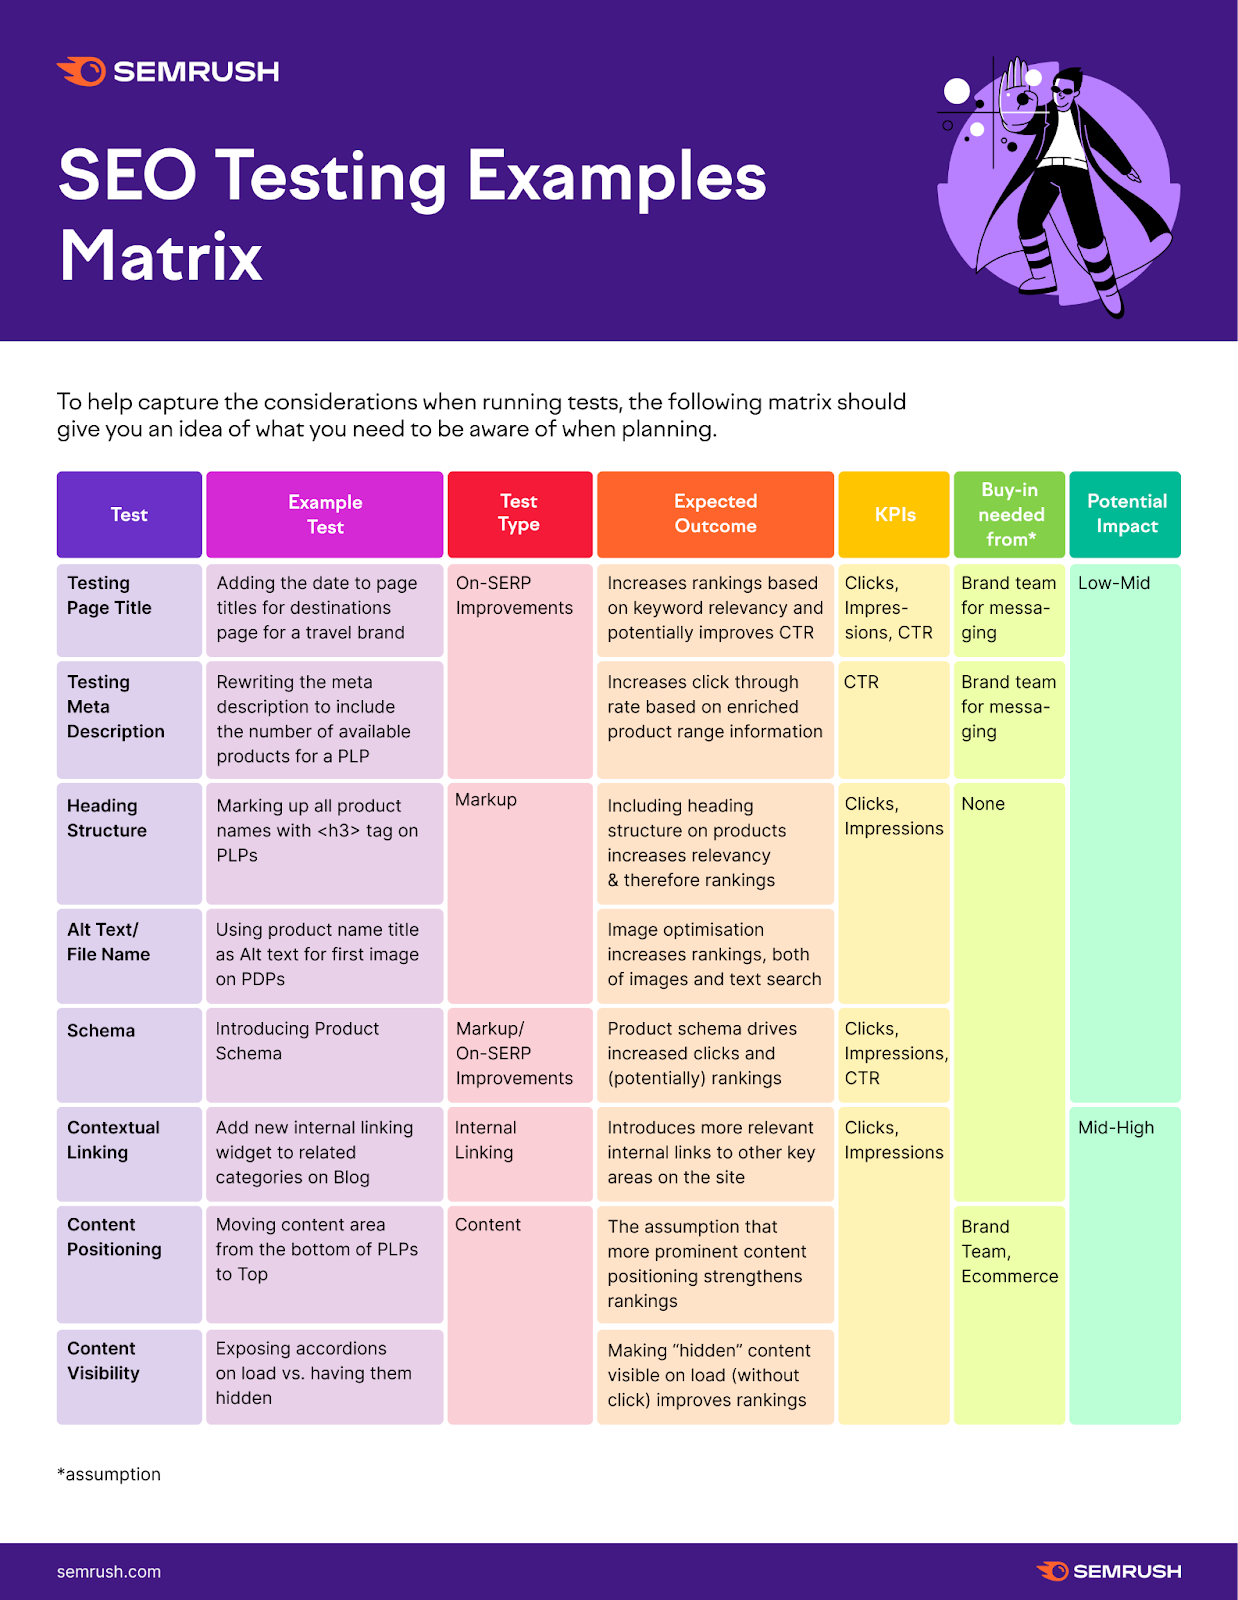 SEO testing examples matrix